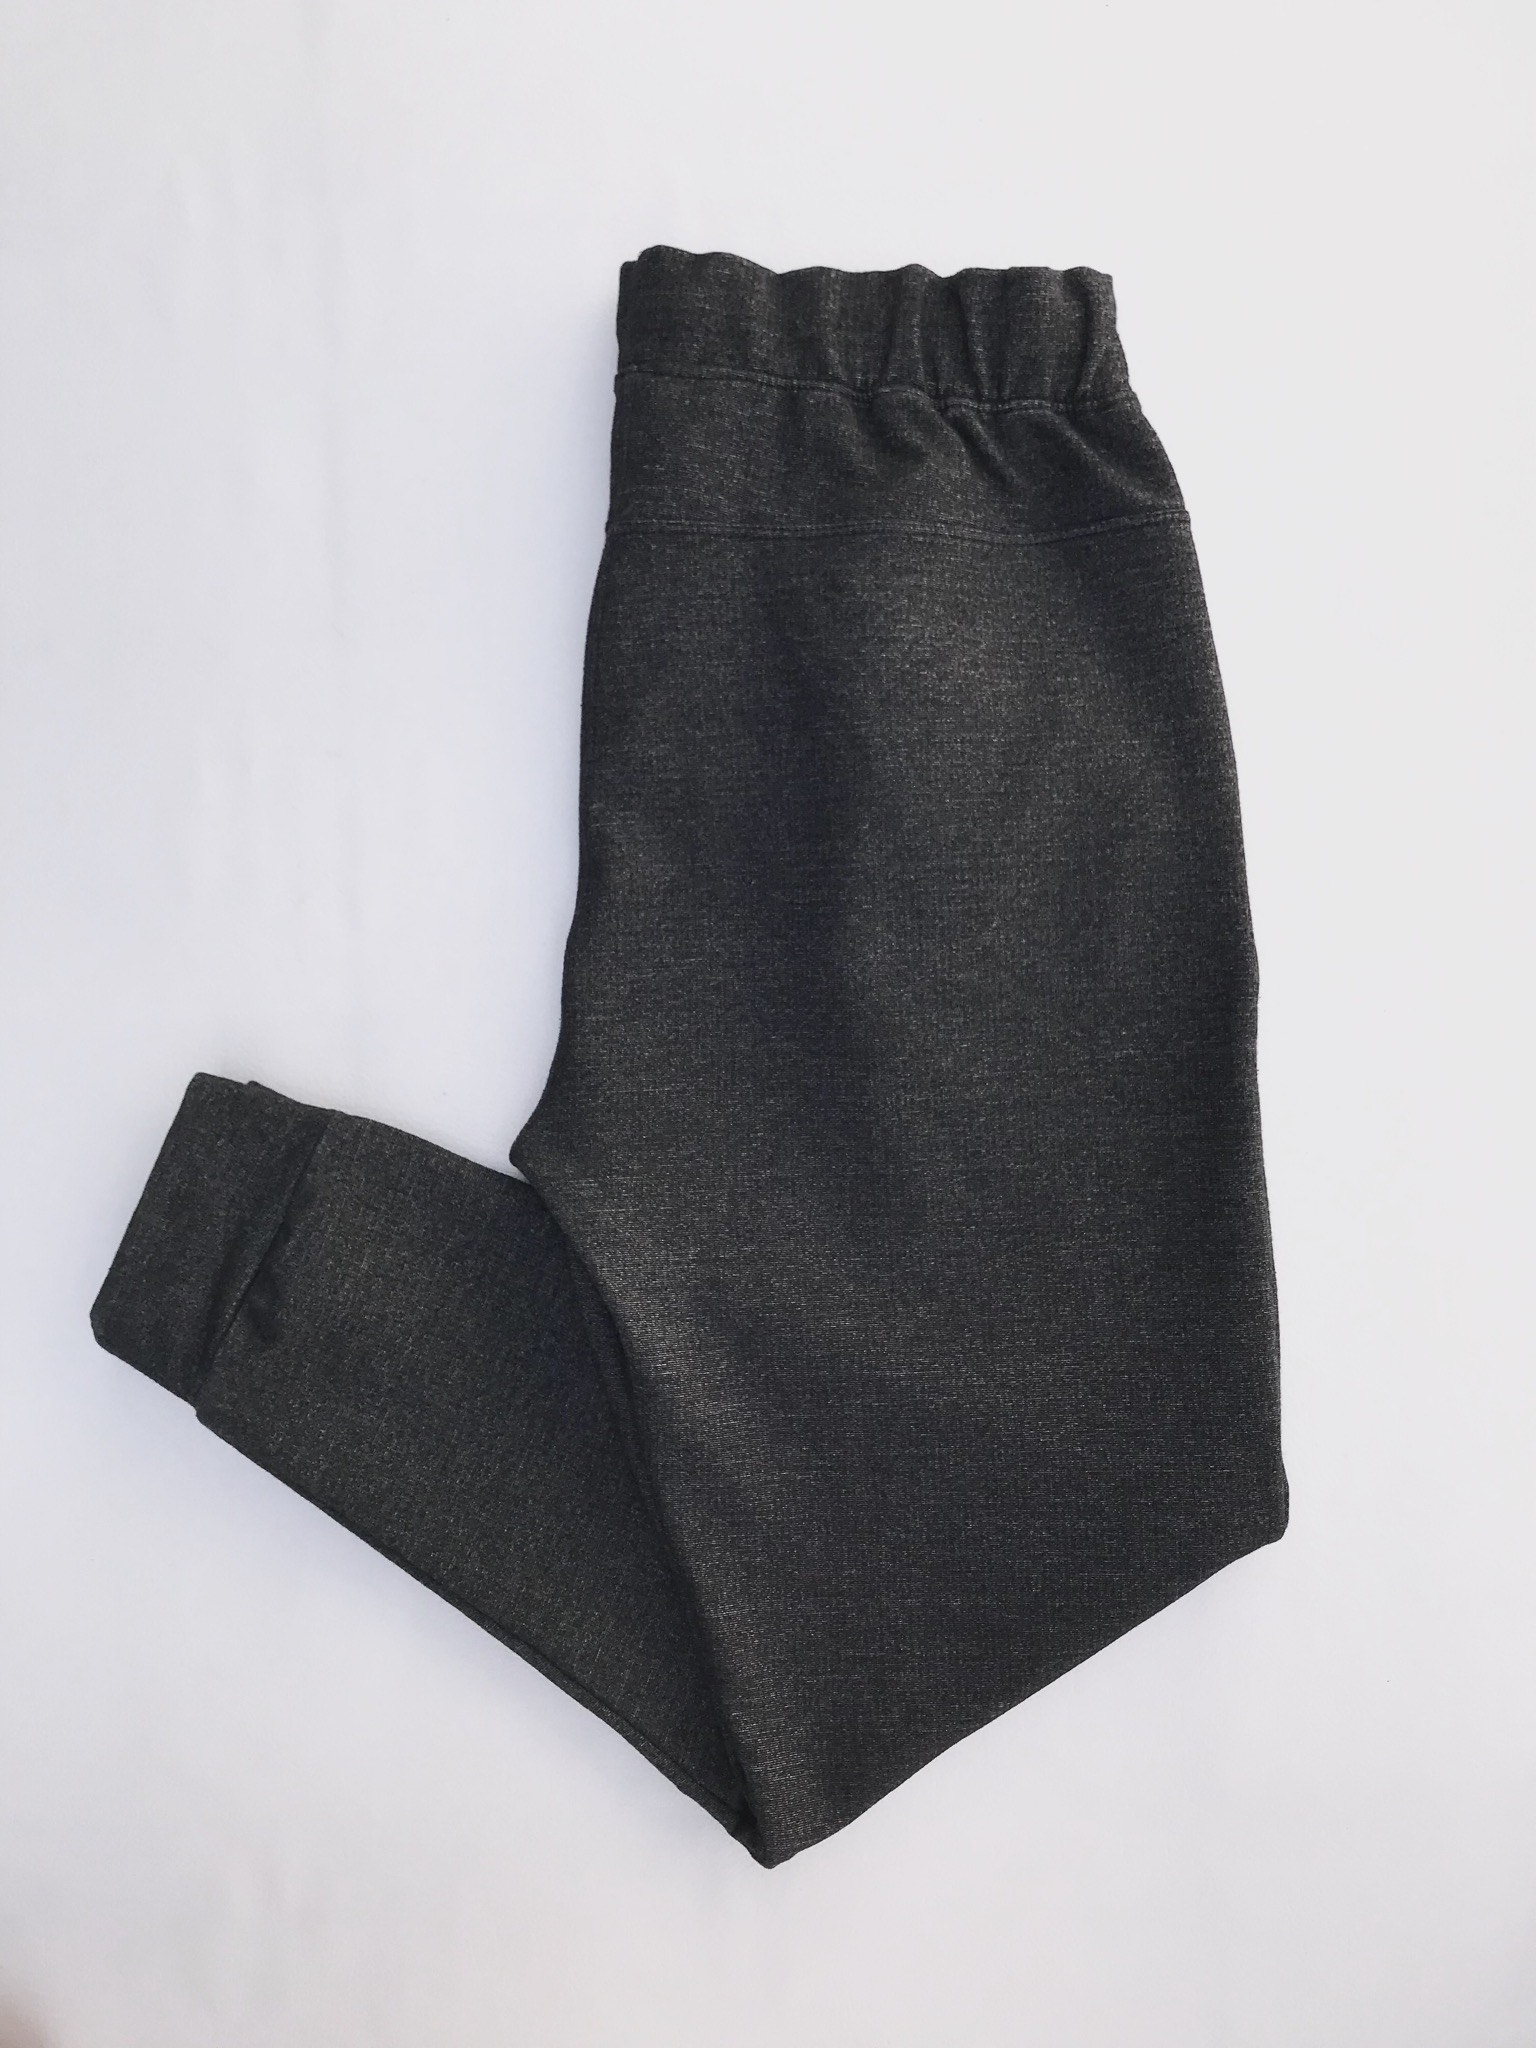 Jogger gris jaspeado, tela tipo algodón stretch, con elàstico y pasador en la cintura y bolsillos laterales
Talla 30